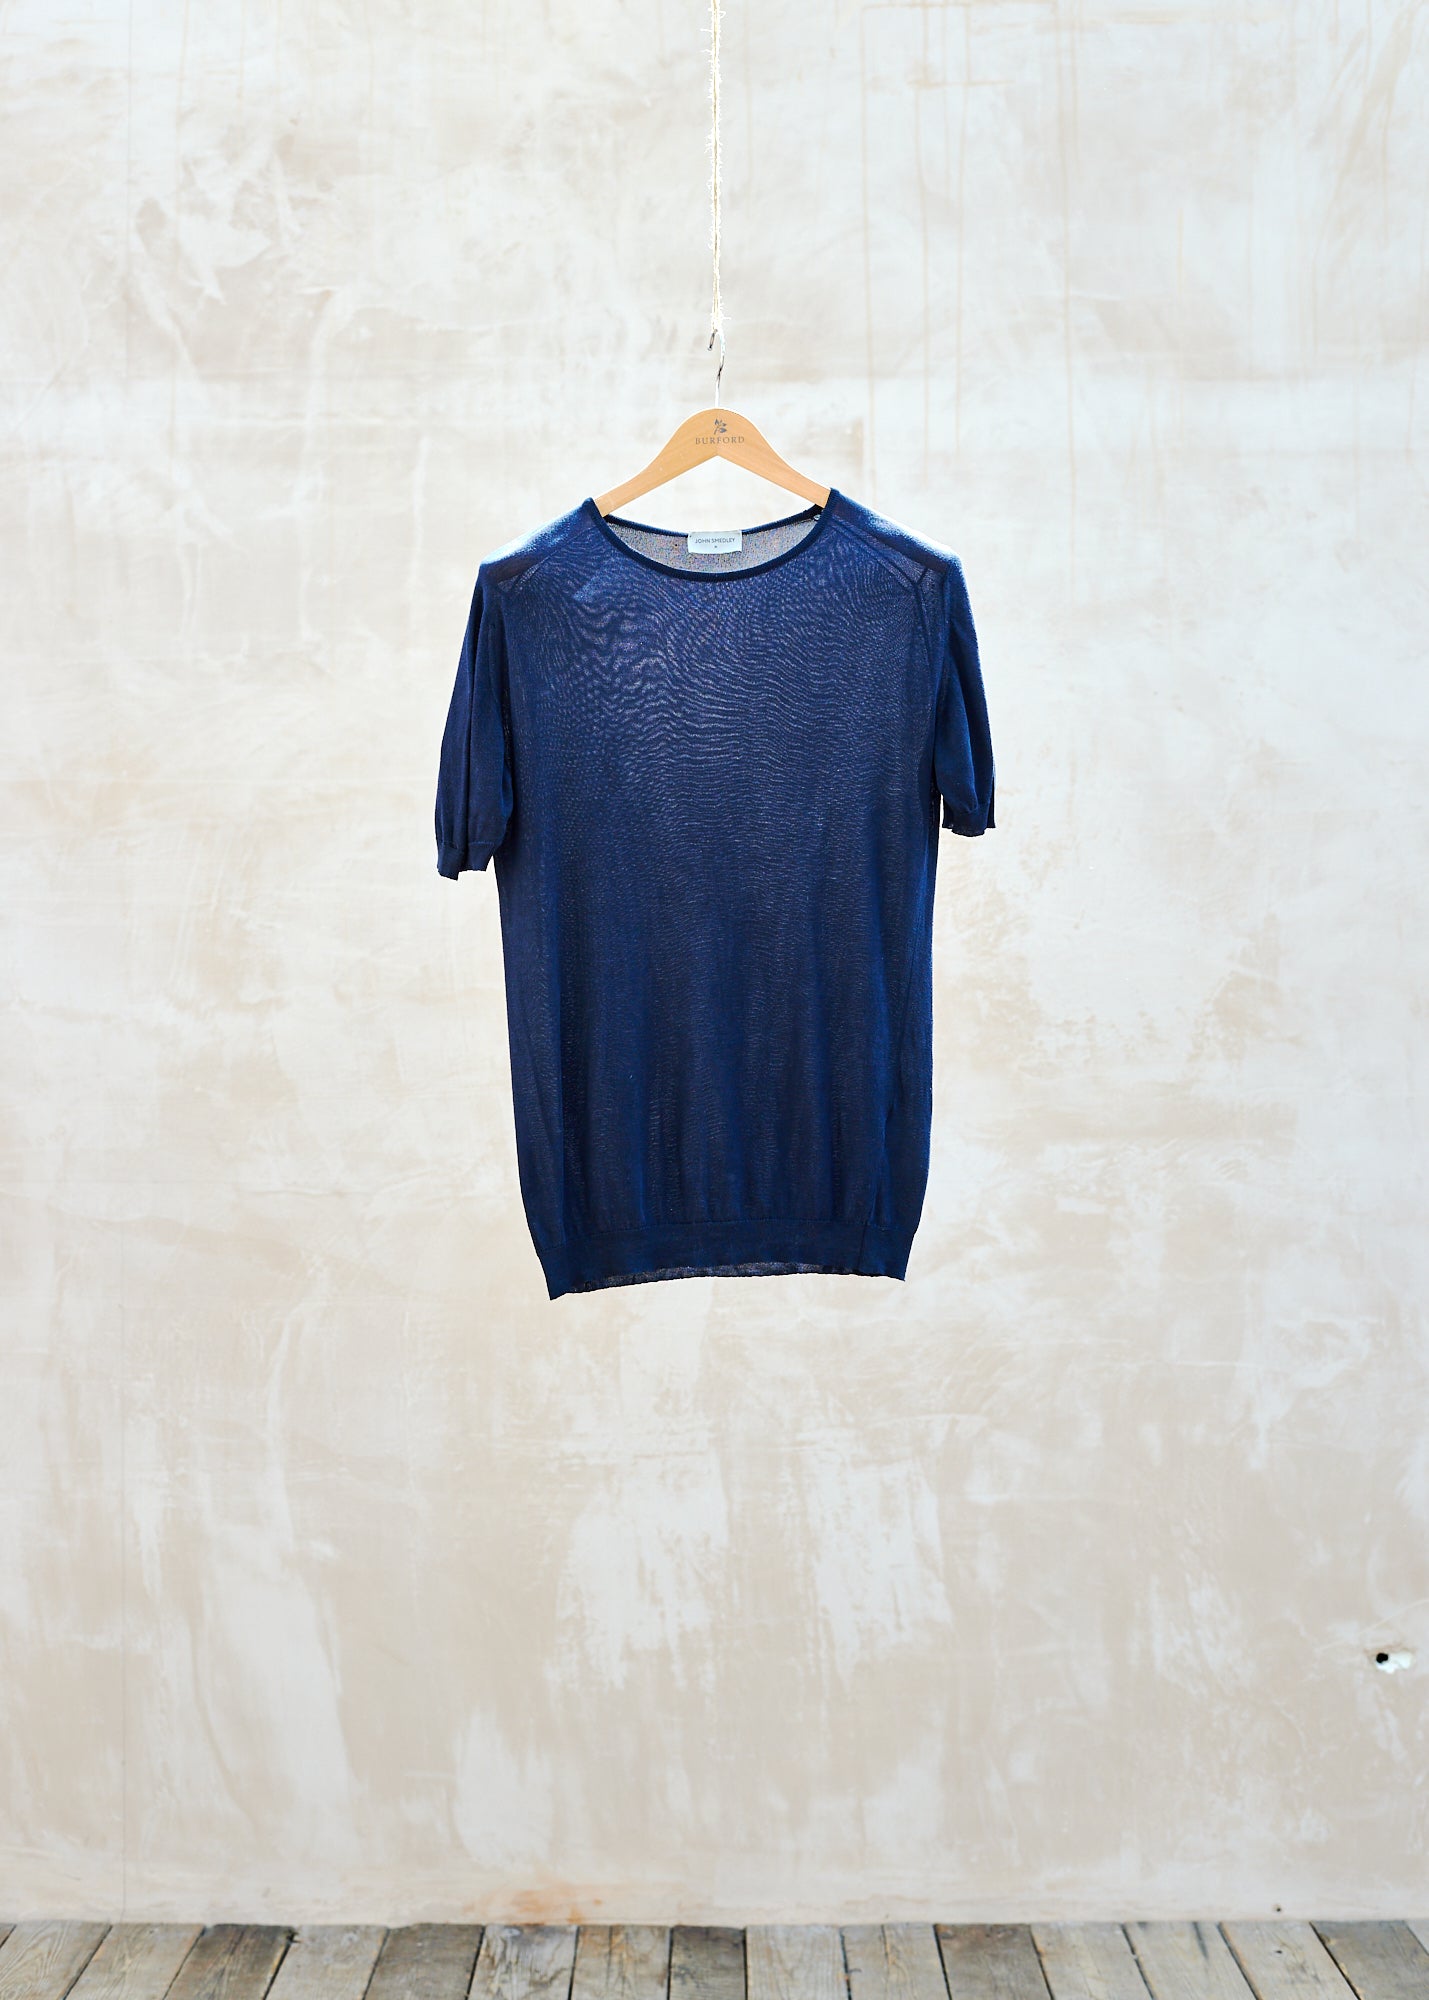 John Smedley 100% Silk Navy Knitted T-Shirt - M